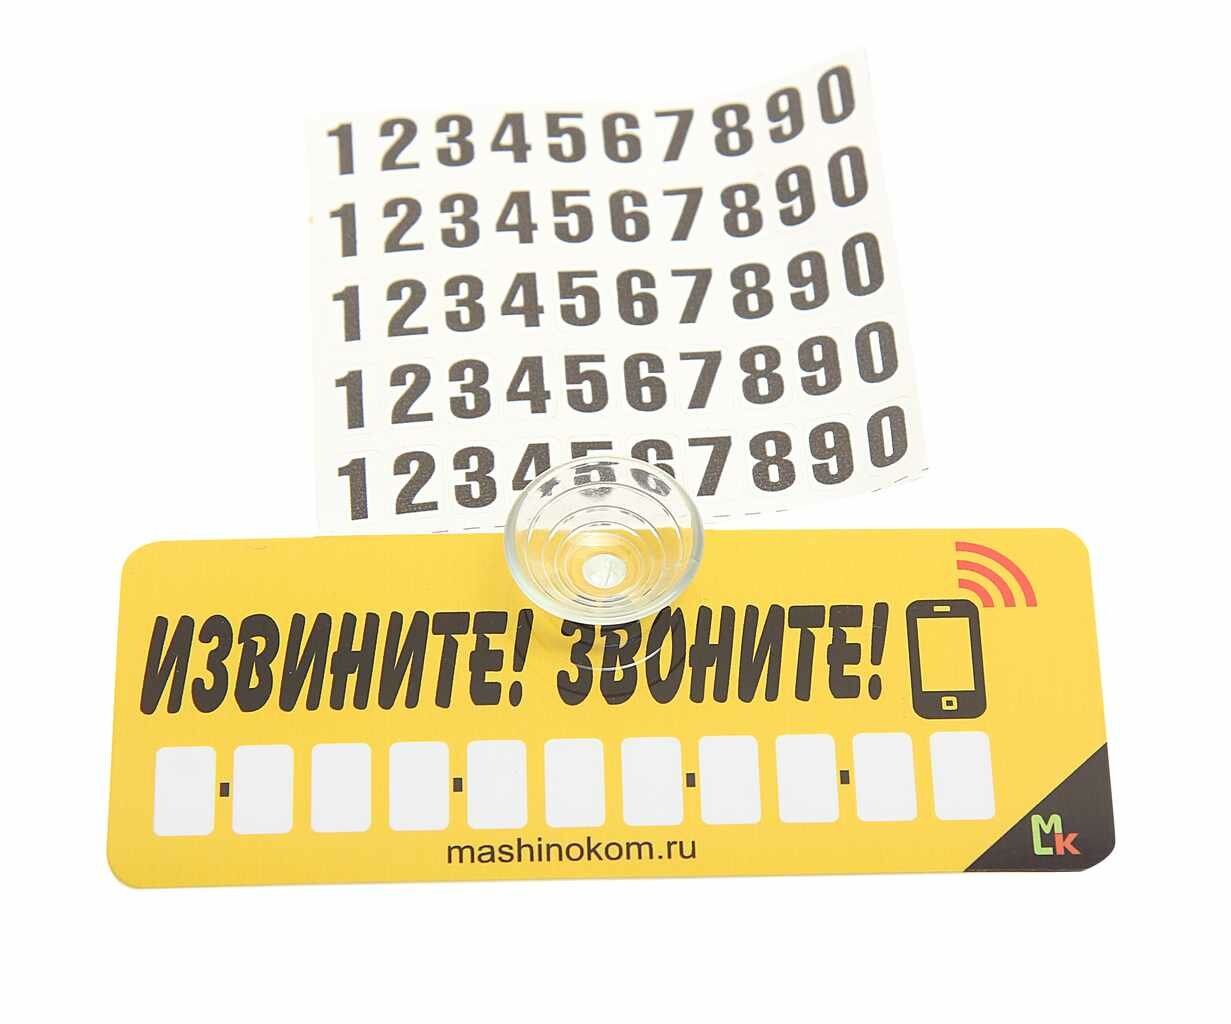 Автовизитка "Извините! Звоните!" пластиковая, на присоске, самоклеющиеся цифры, AVP 005, MASHINOKOM